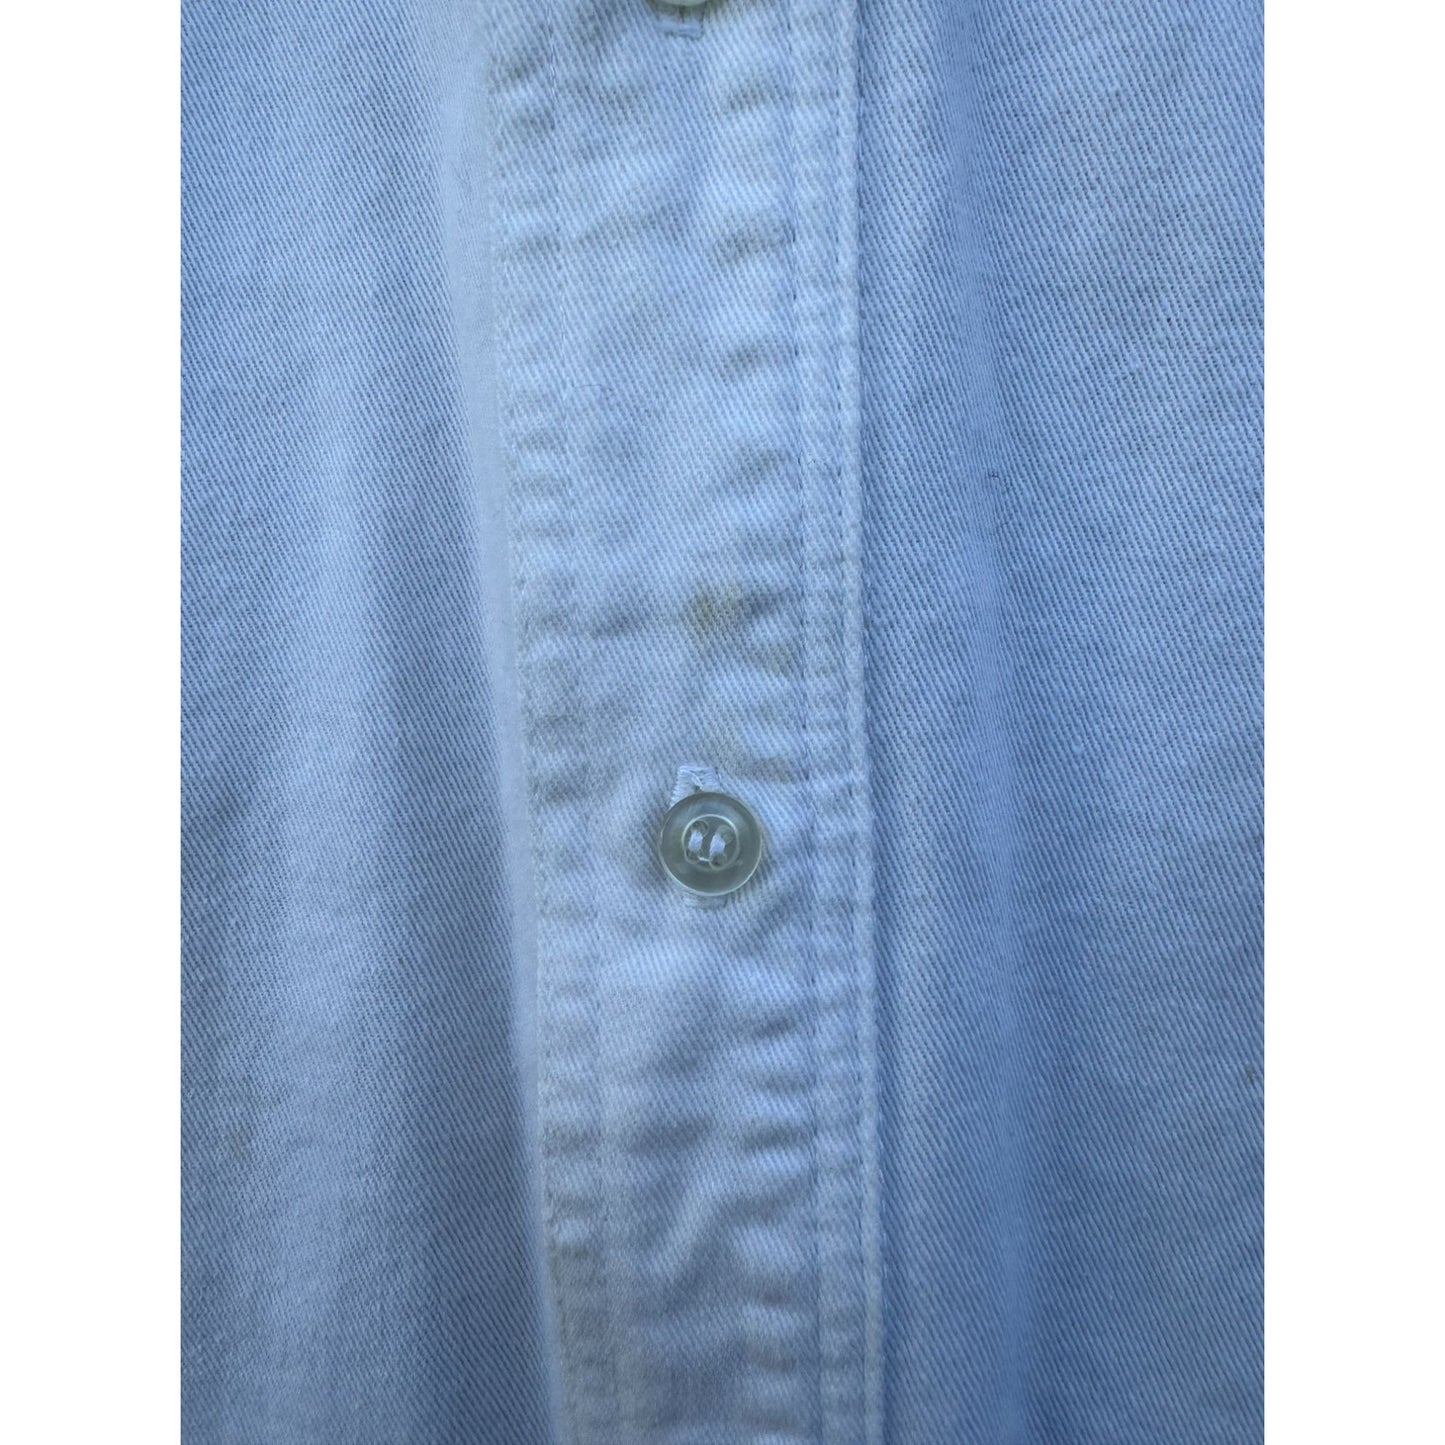 Slammer's Western Button Down Long Sleeve Shirt Medium